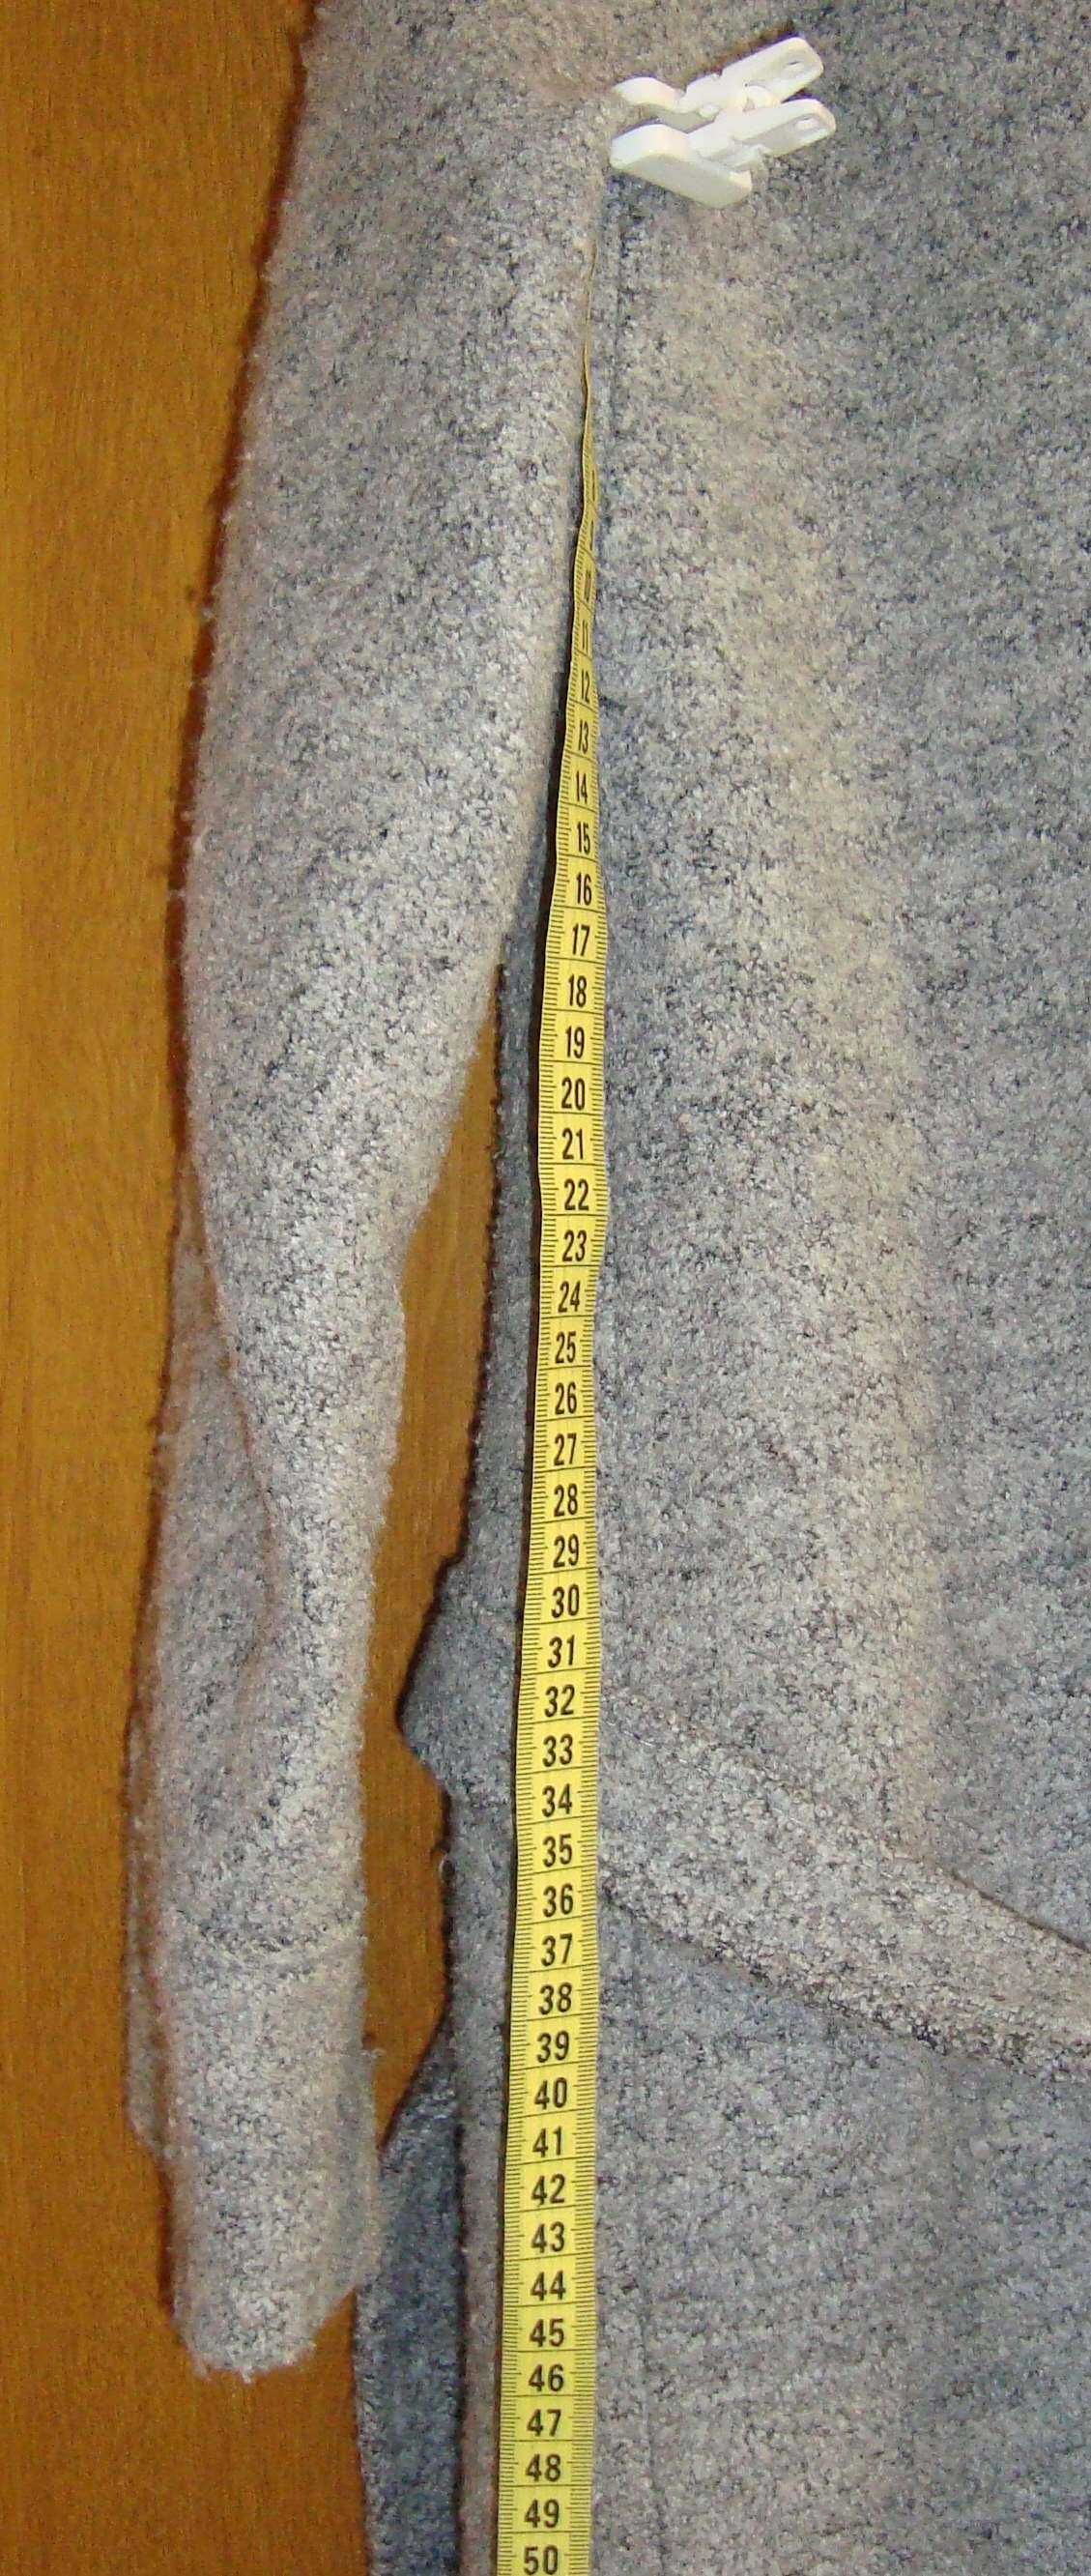 Женское укороченное пальто без воротника ТМ Kovash 40-42 р.